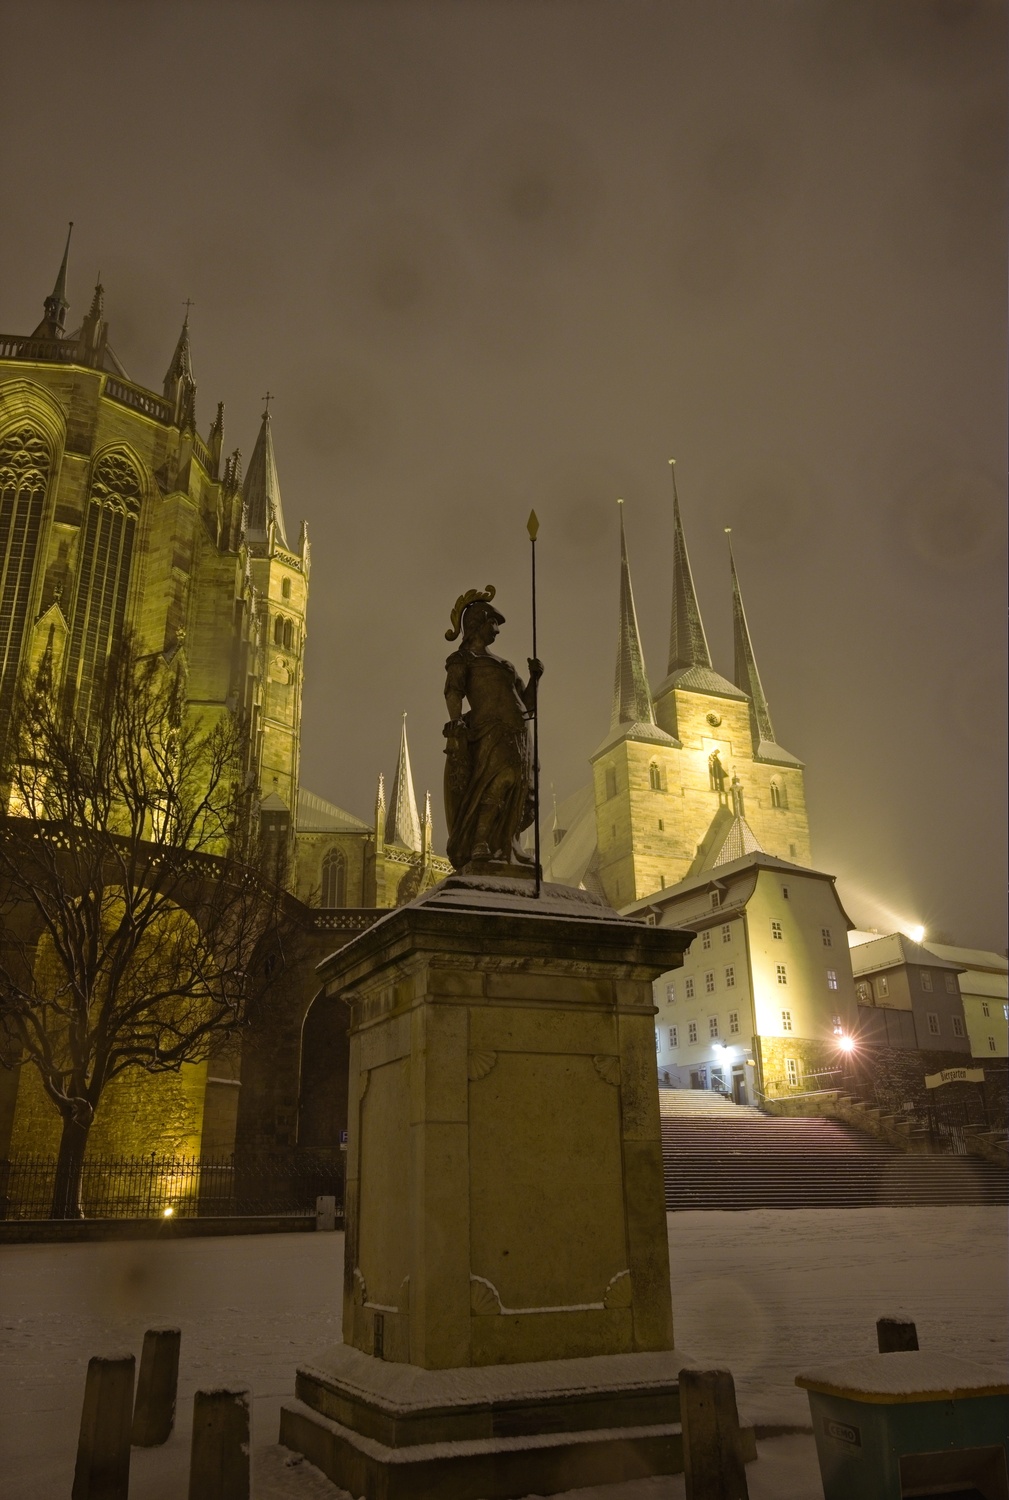 Die Minervastatue mit Dom und Severikirche im Hintergrund. Der von einem direkt auf die Kamera gerichteten Leuchte entstehende Lichtstern tritt hervor, ebenso wie die Tropfen auf den Linsen.